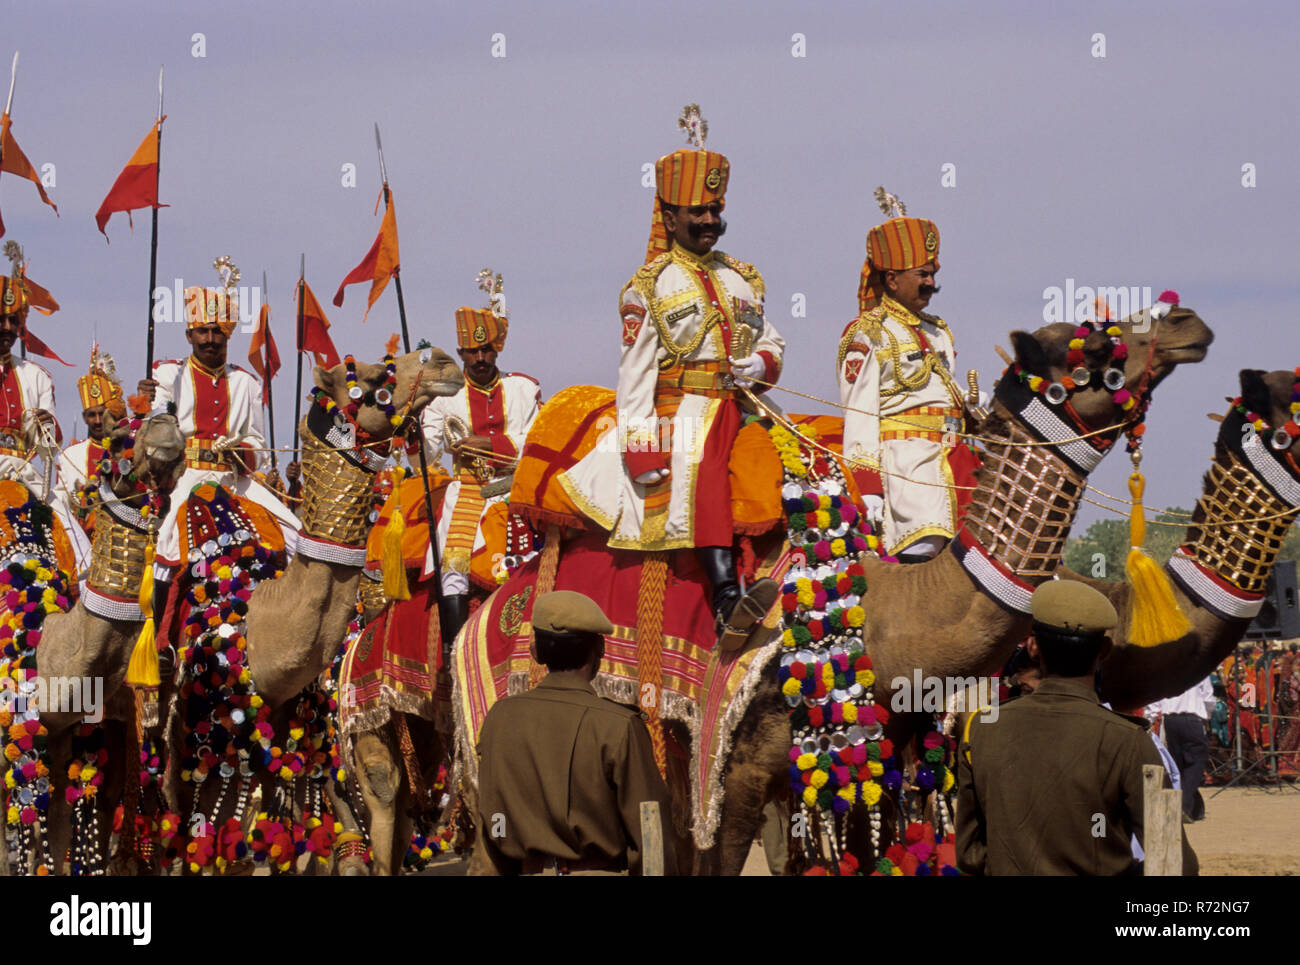 Procesión de camellos, procesión ceremonial, Festival del Desierto de Jaisalmer, Rajasthan, India Foto de stock